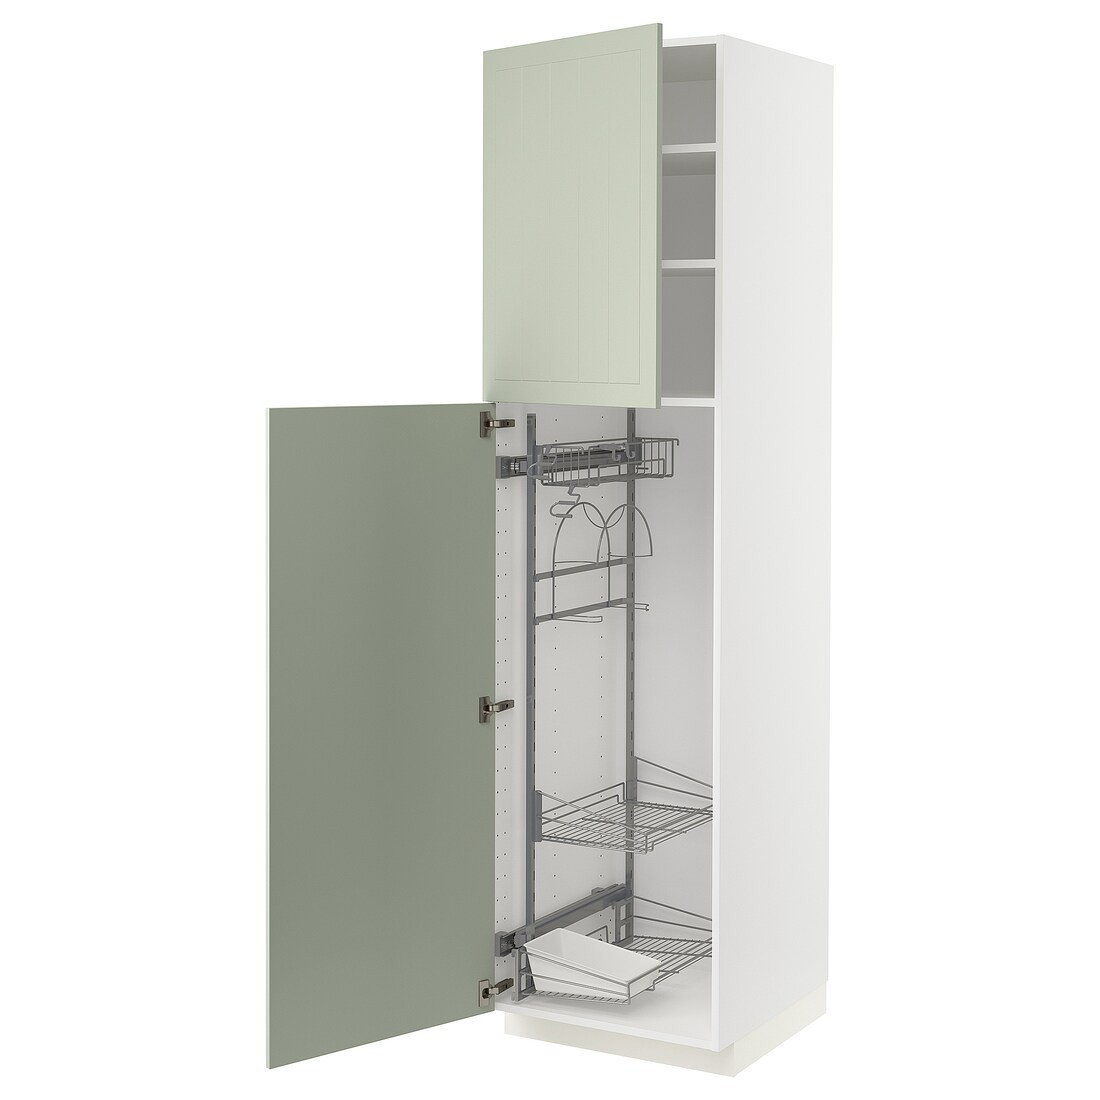 METOD МЕТОД Высокий шкаф с отделением для аксессуаров для уборки, белый / Stensund светло-зеленый, 60x60x220 см